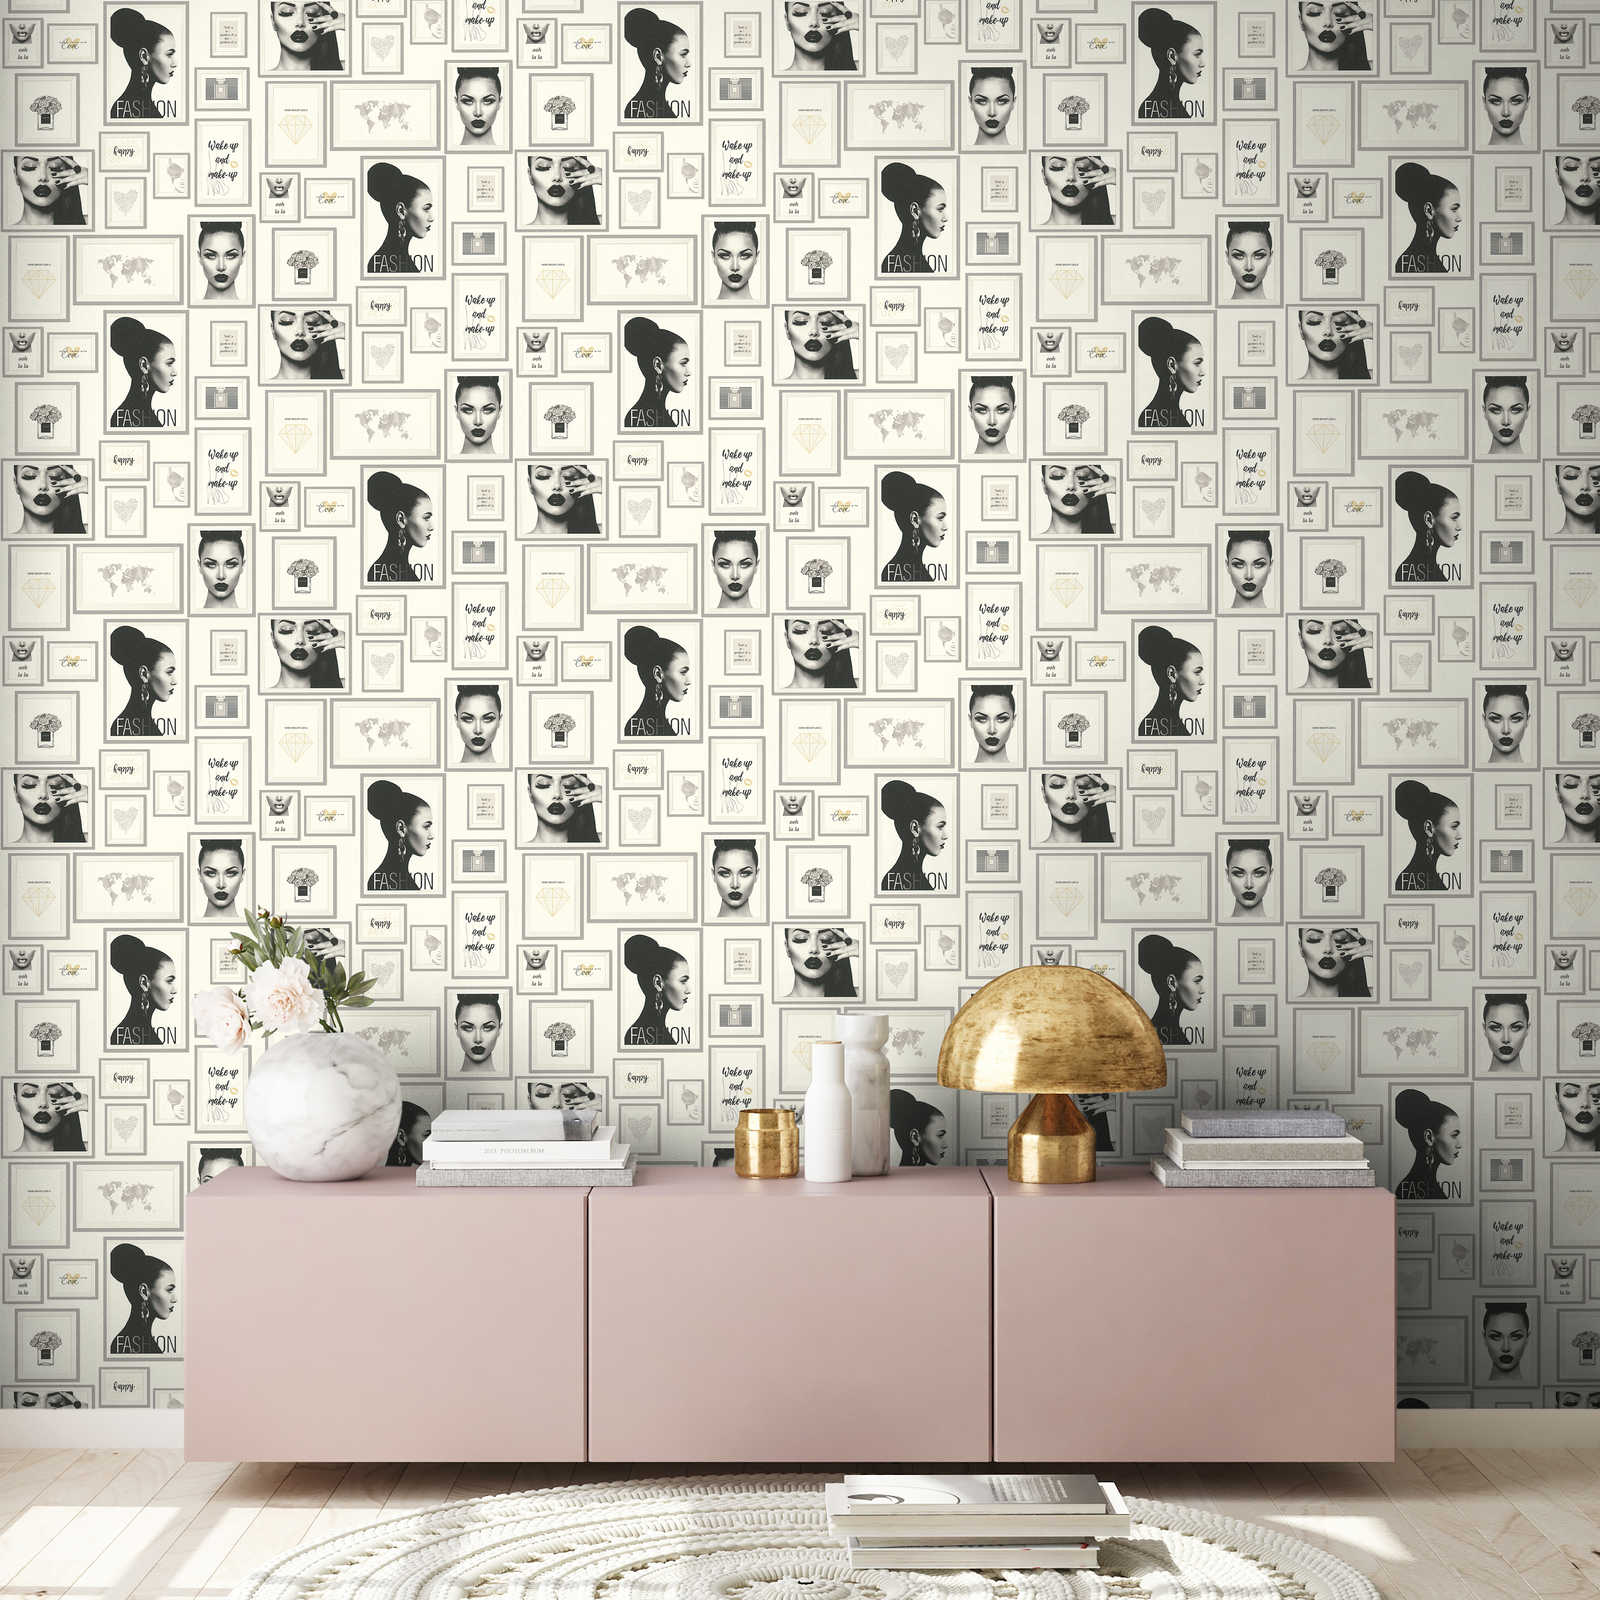             Papier peint Fashion Design avec décorations murales - argent, noir, blanc
        